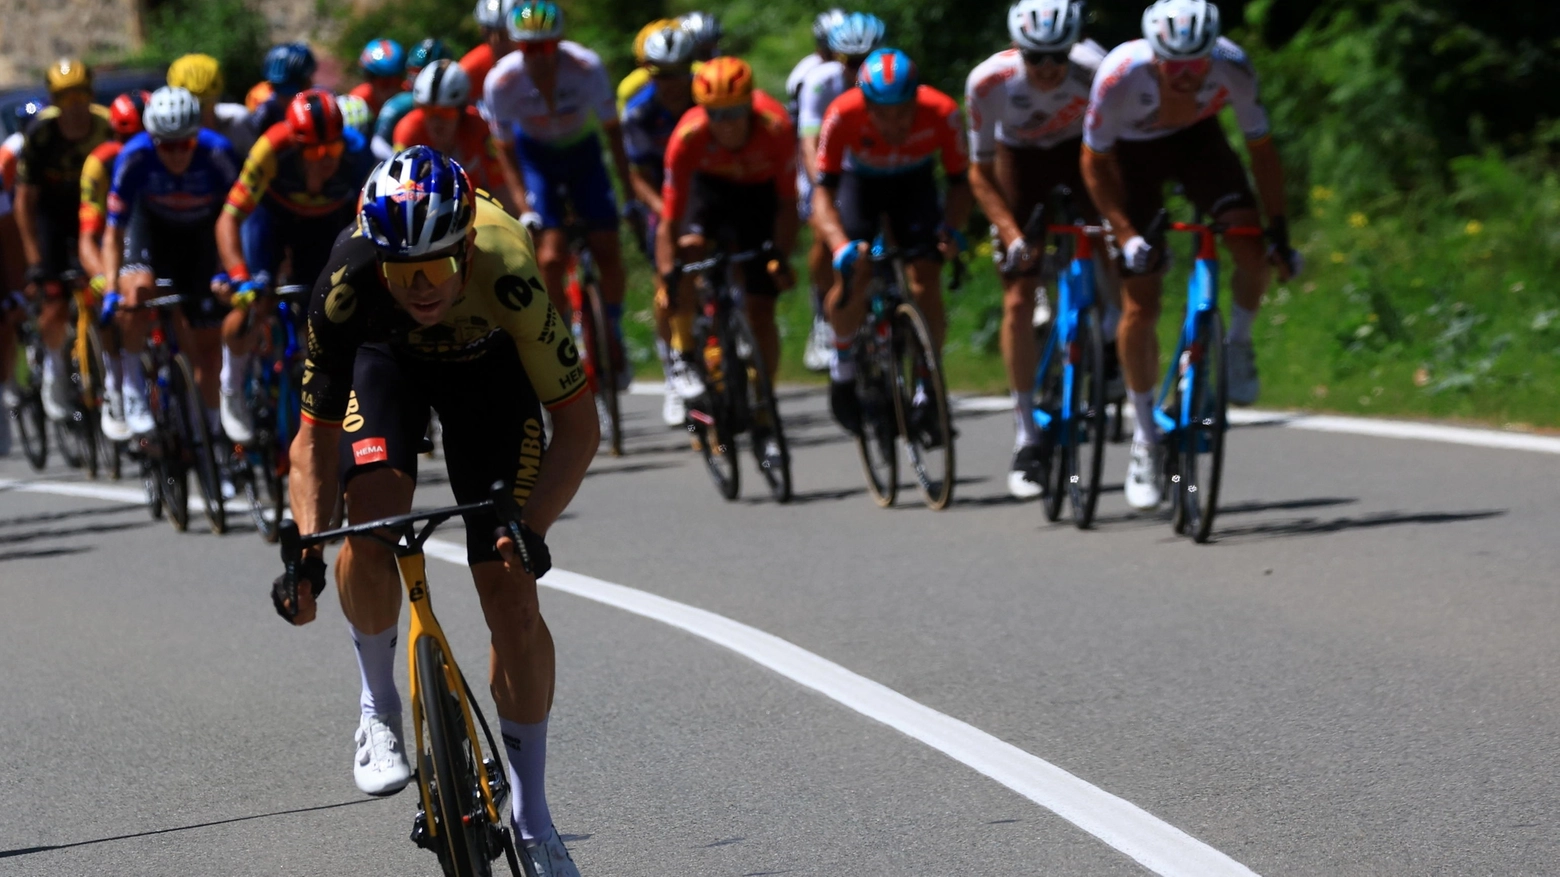 La scorsa edizione del Tour de France che quest'anno passerà anche dall'Emilia Romagna (foto di repertorio)